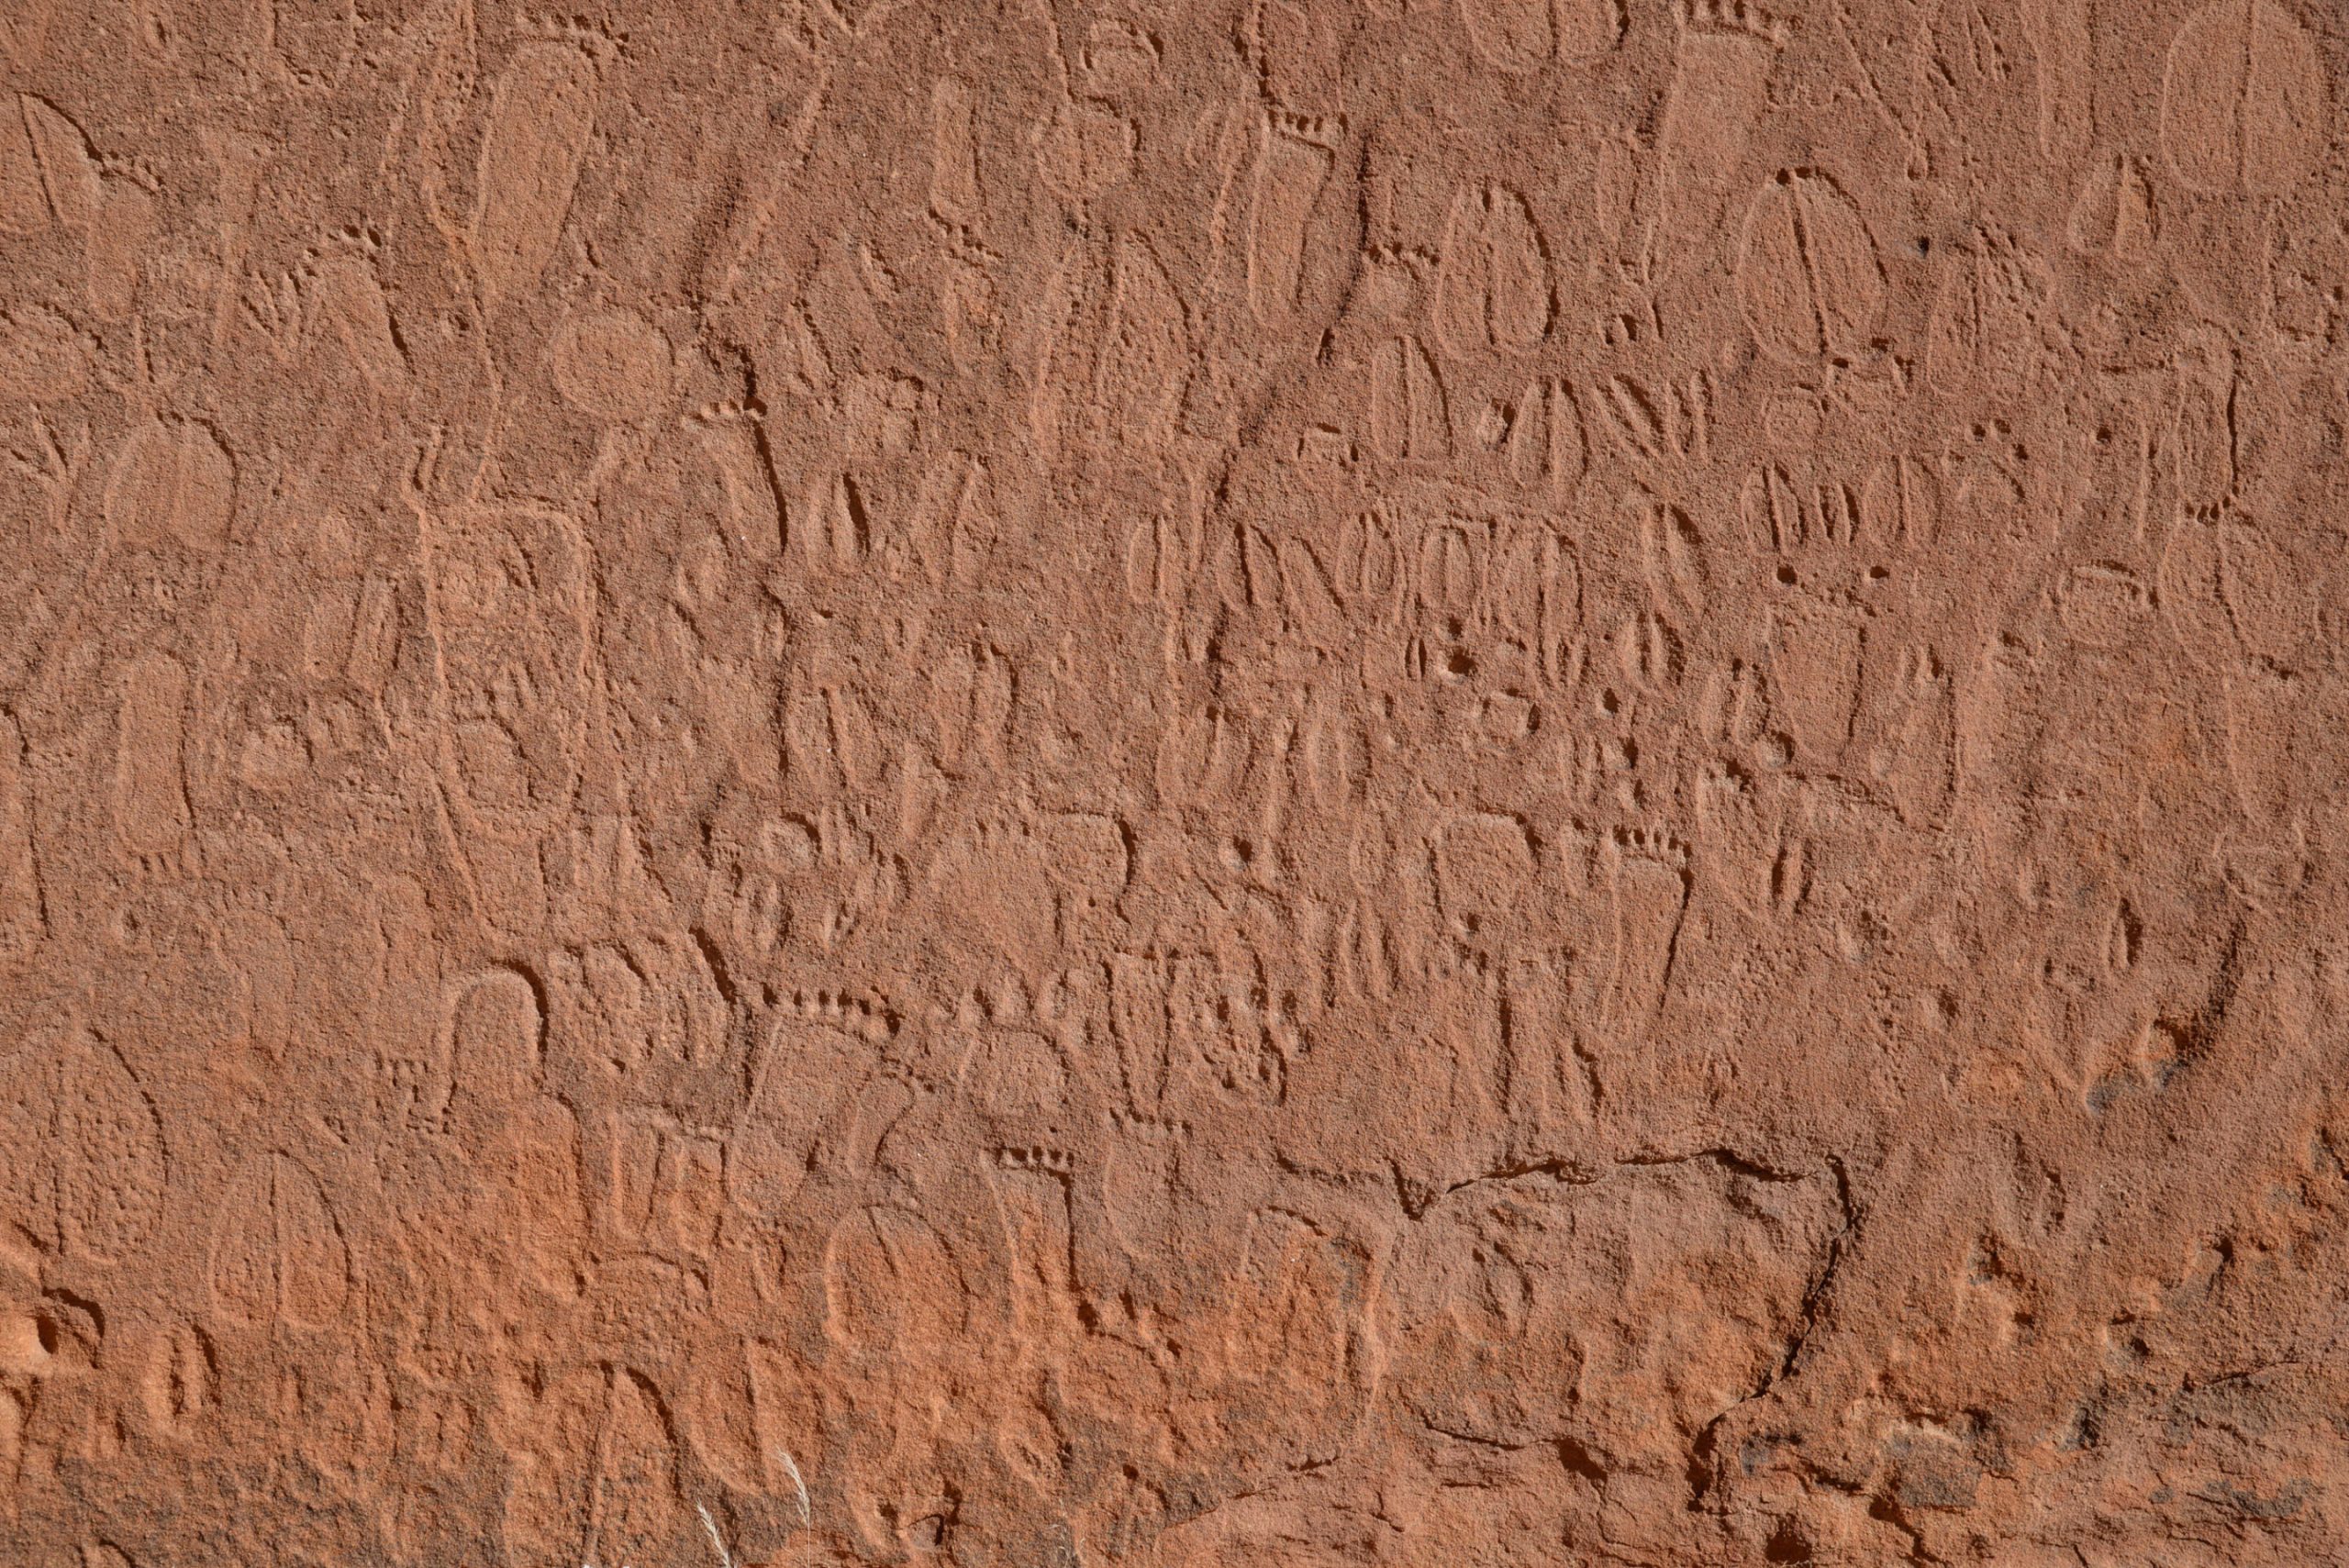 Decoding Namibia's Ancient Rock Art — Curiosmos